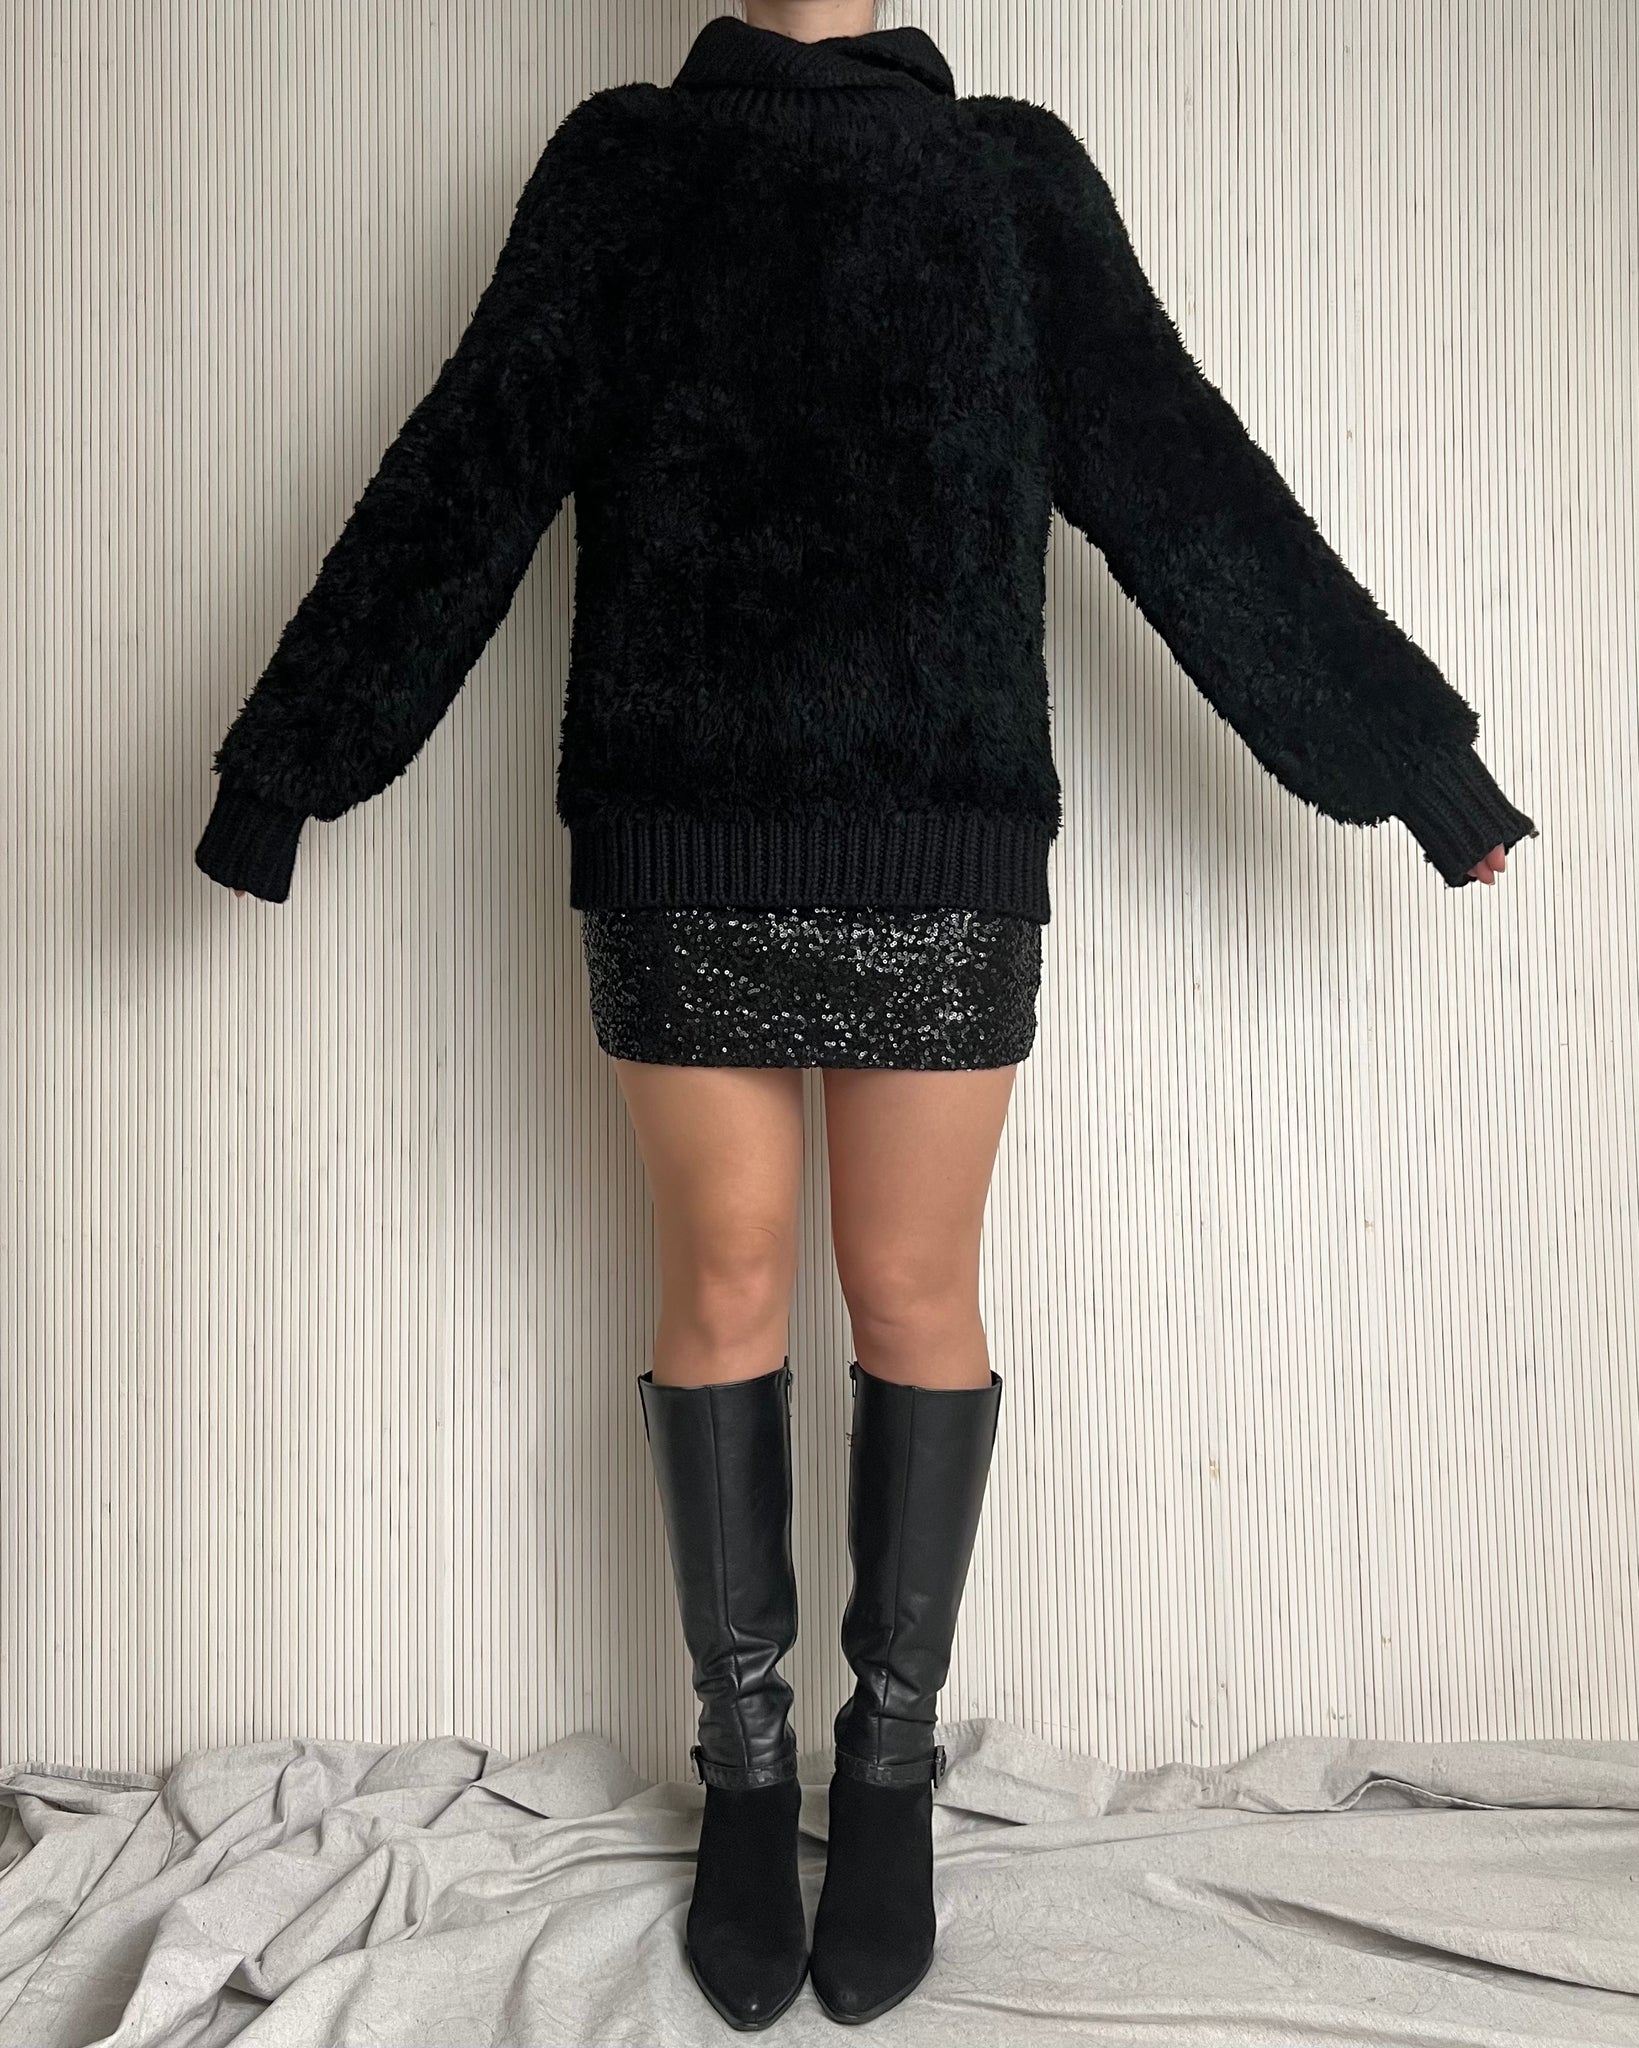 80s Fuzzy Black Sweater (Size M)